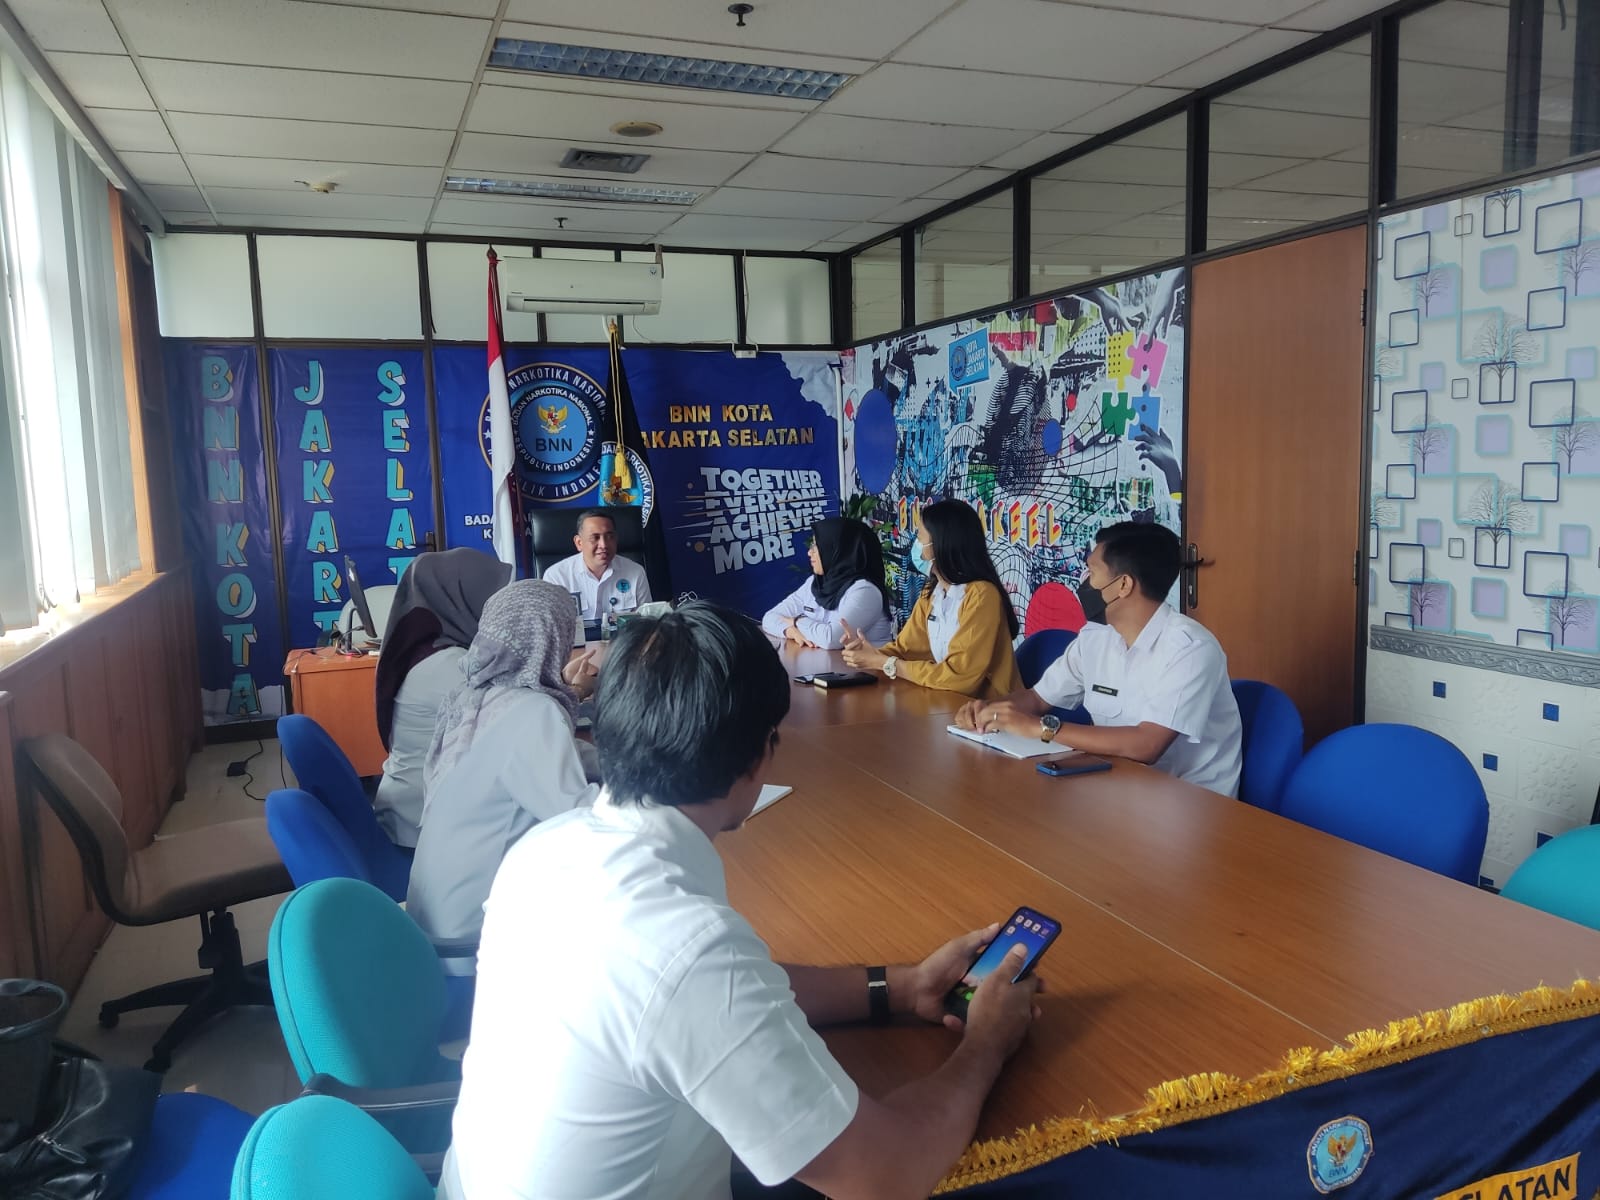 Lakukan Pencegahan, Bawaslu Kunjungi Badan Narkotika Kota Jakarta Selatan